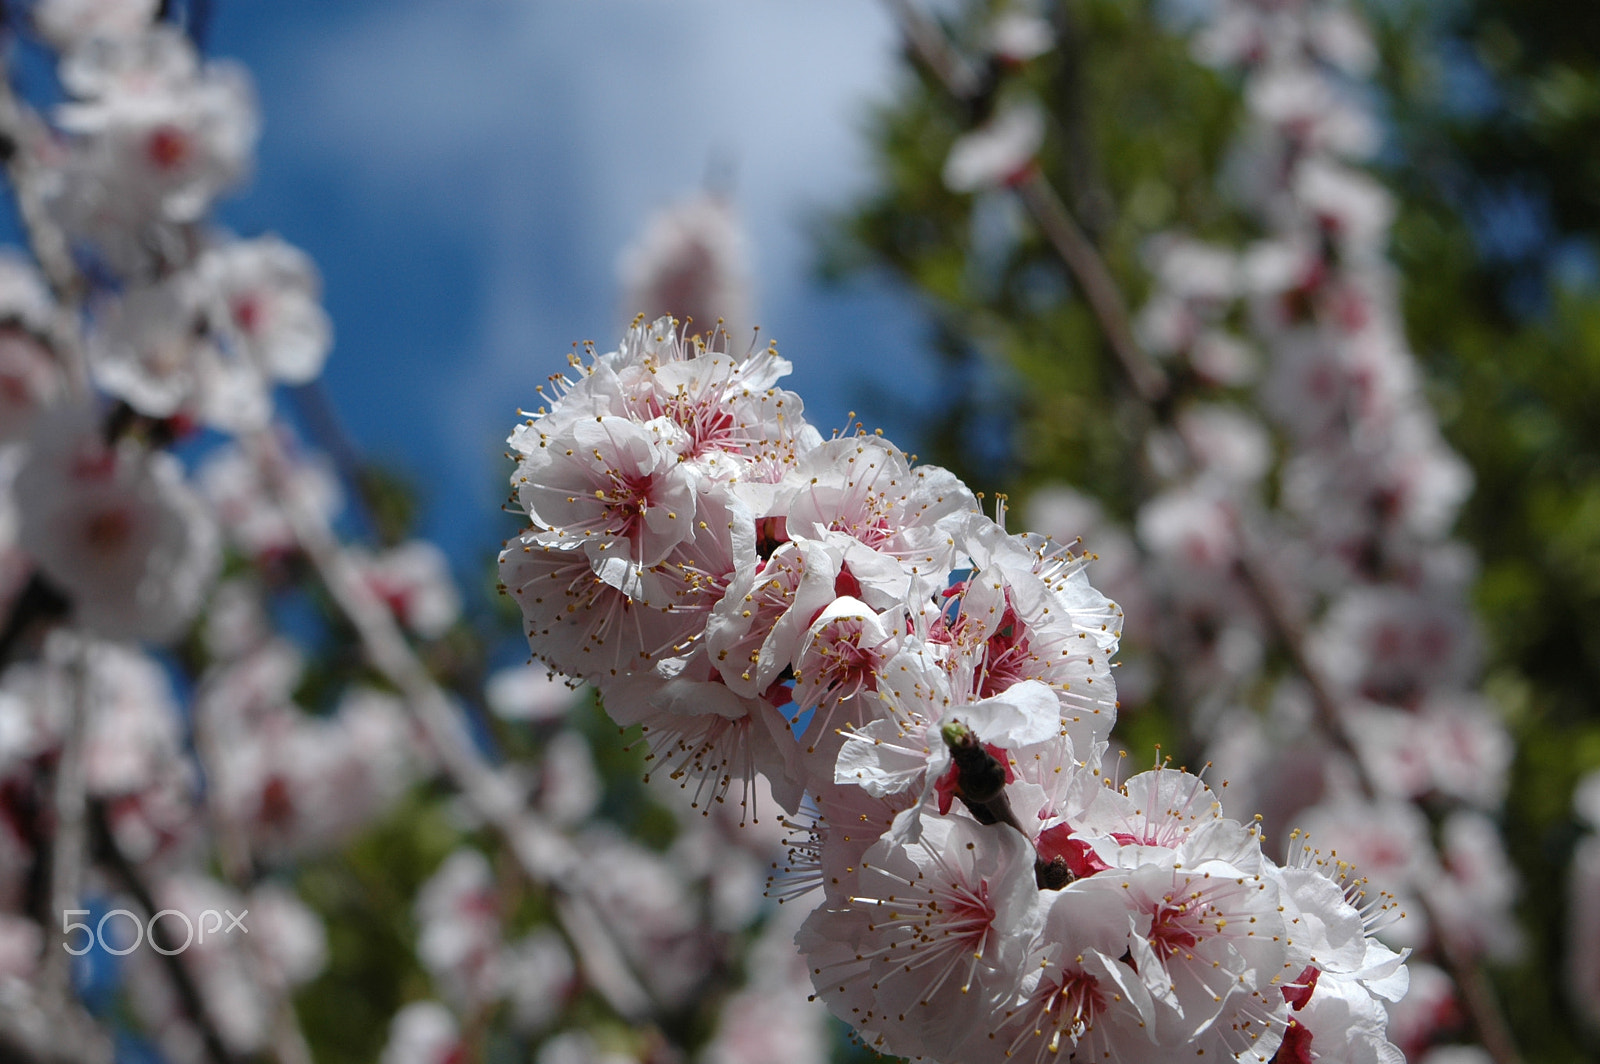 AF Zoom-Nikkor 28-80mm f/3.5-5.6D sample photo. Pomegranate tree blossom photography